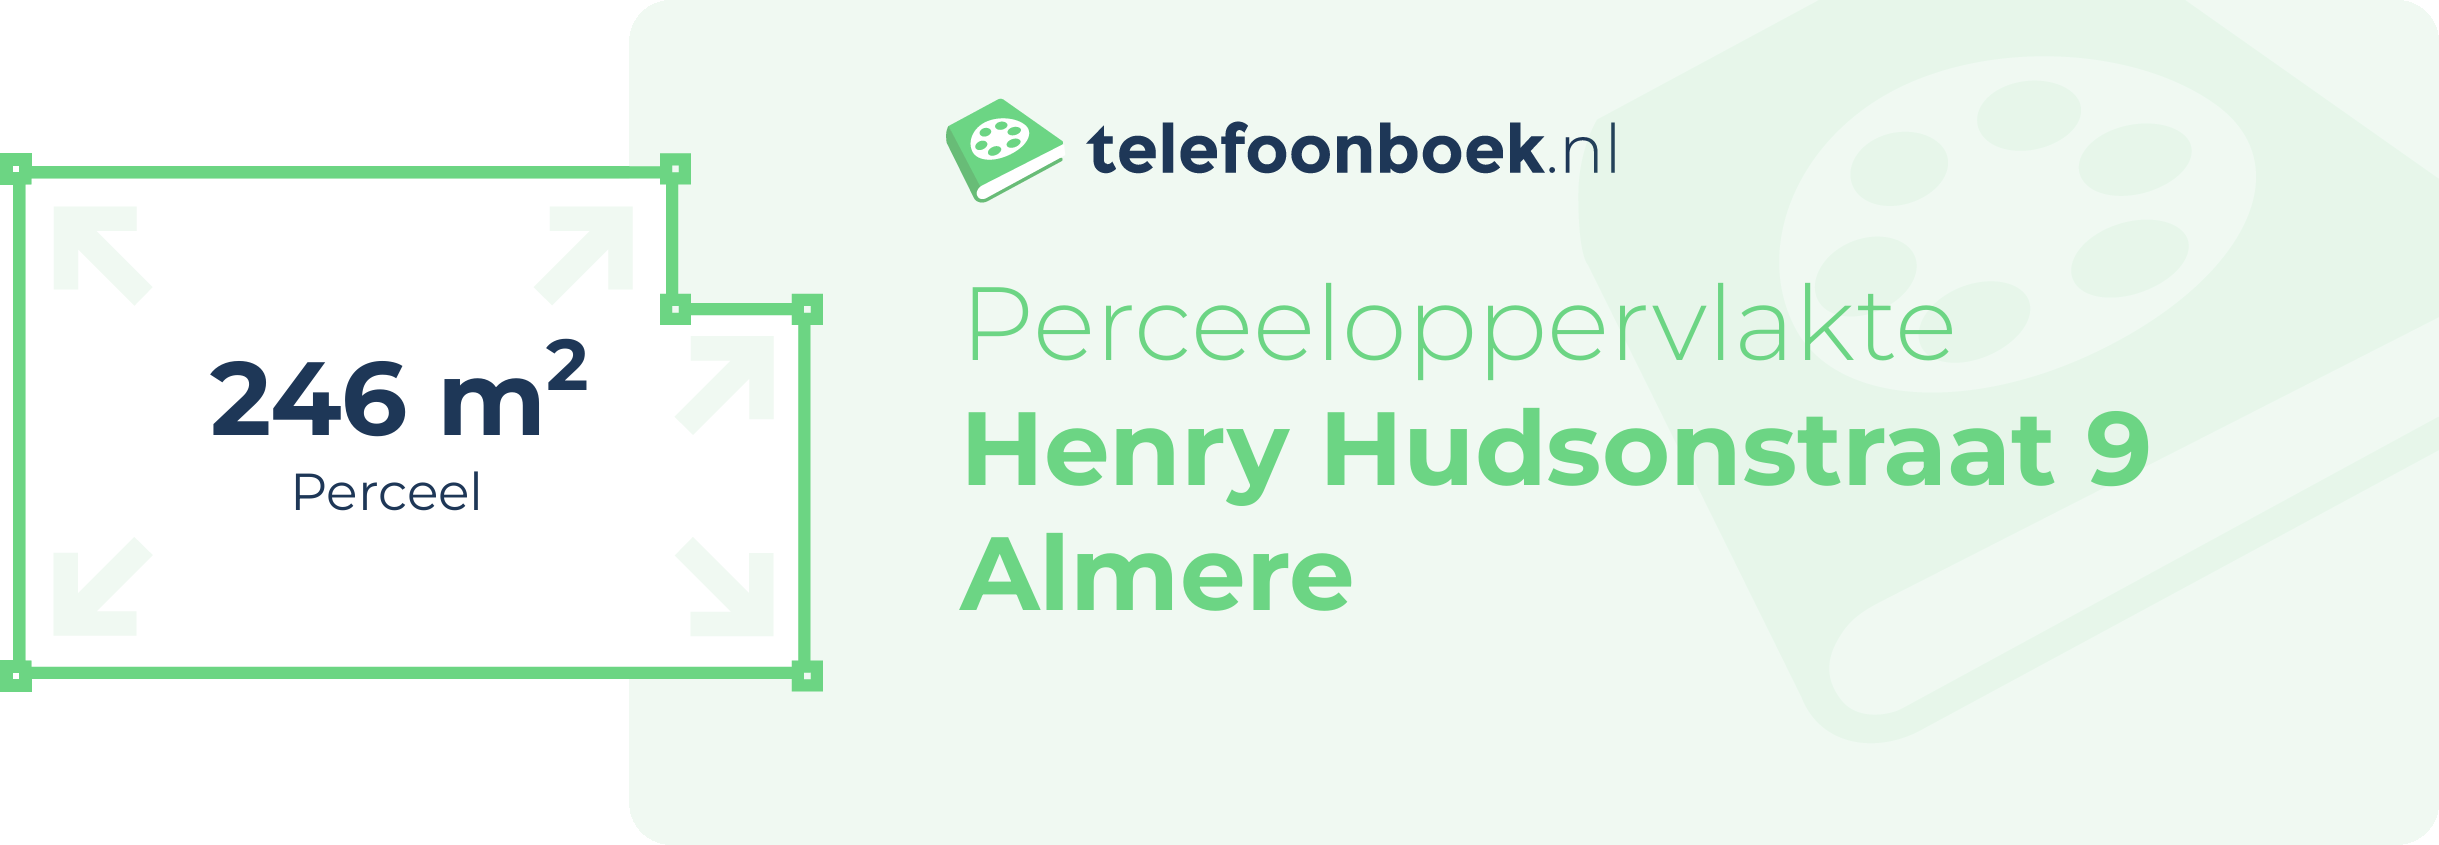 Perceeloppervlakte Henry Hudsonstraat 9 Almere